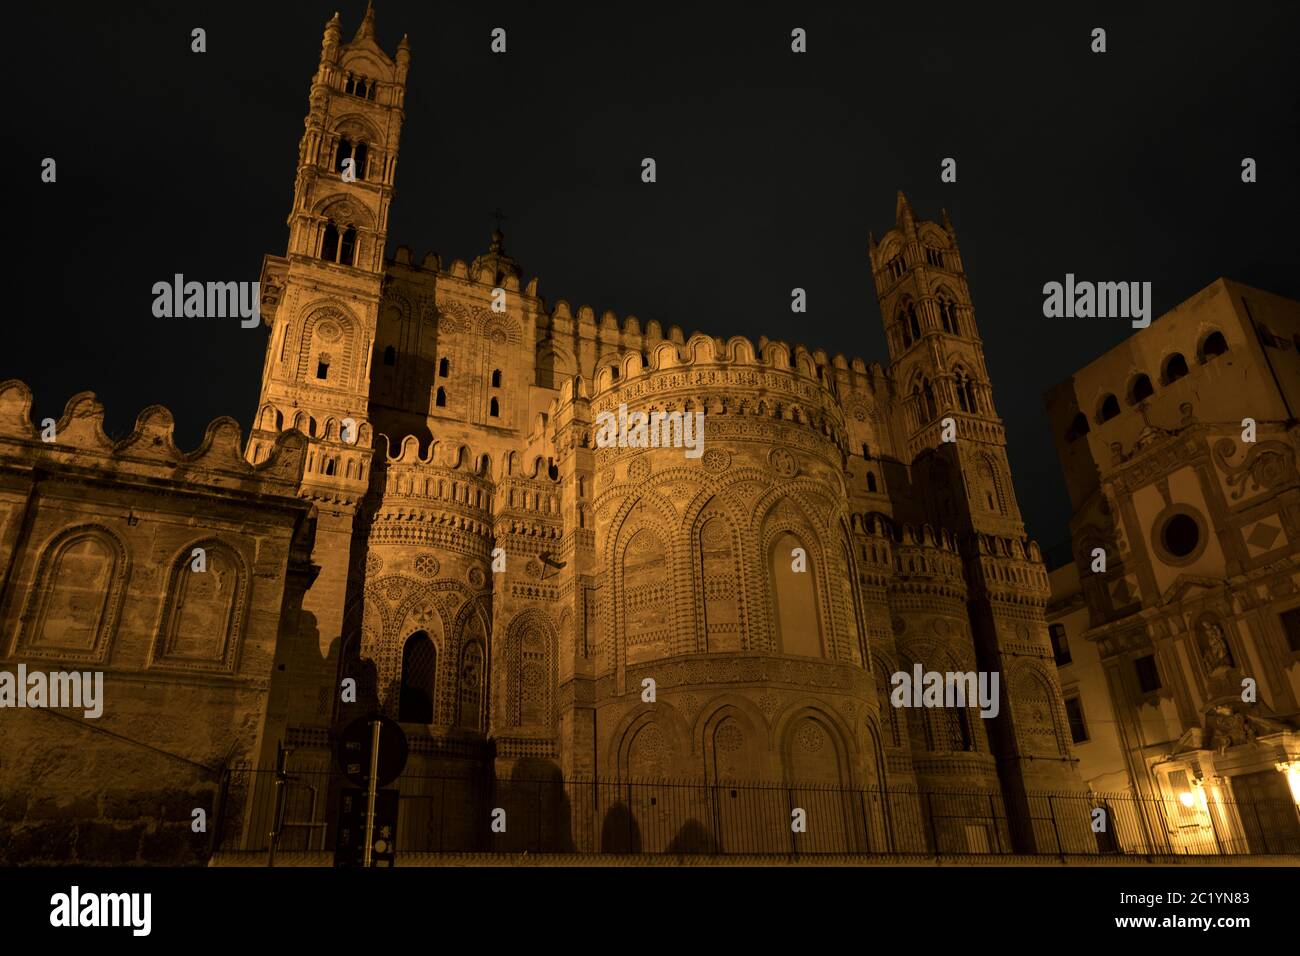 Cattedrale Santa Vergine Maria Assunta, illuminata di notte. Patrimonio dell'umanità dell'UNESCO, è un mix di stile architettonico arabo e normanno, Foto Stock